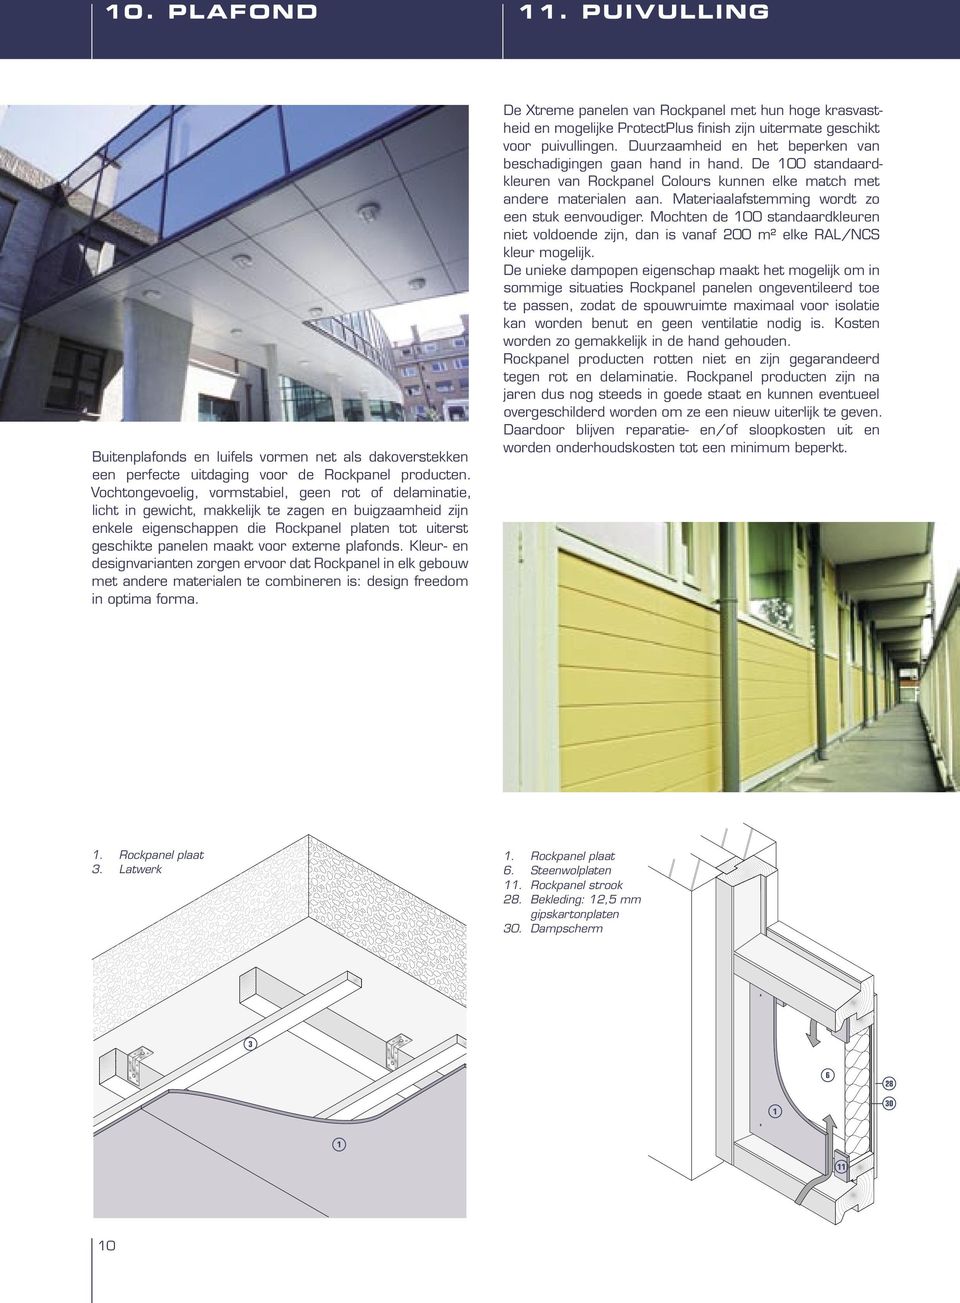 externe plafonds. Kleur- en designvarianten zorgen ervoor dat Rockpanel in elk gebouw met andere materialen te combineren is: design freedom in optima forma.